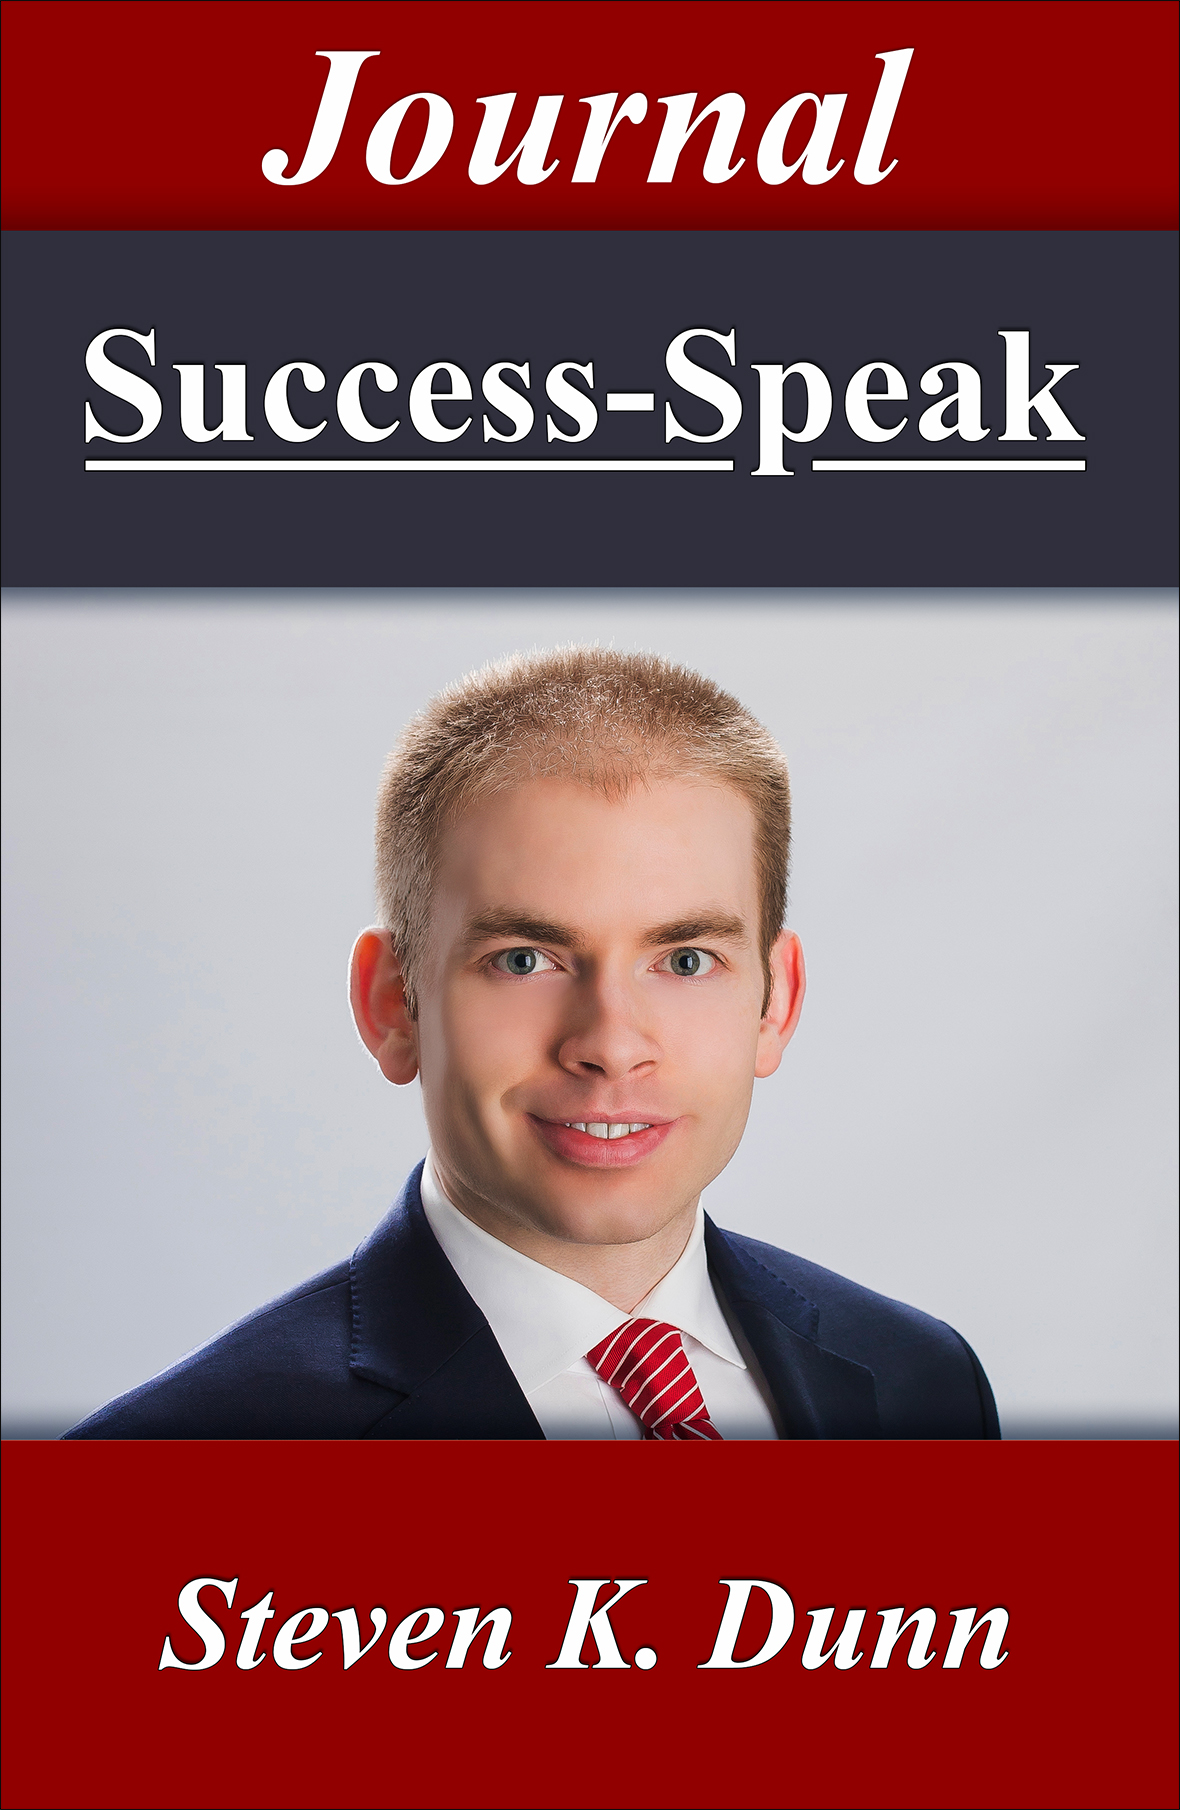 Success Speak Cover v15 New Journal for Web Insertion